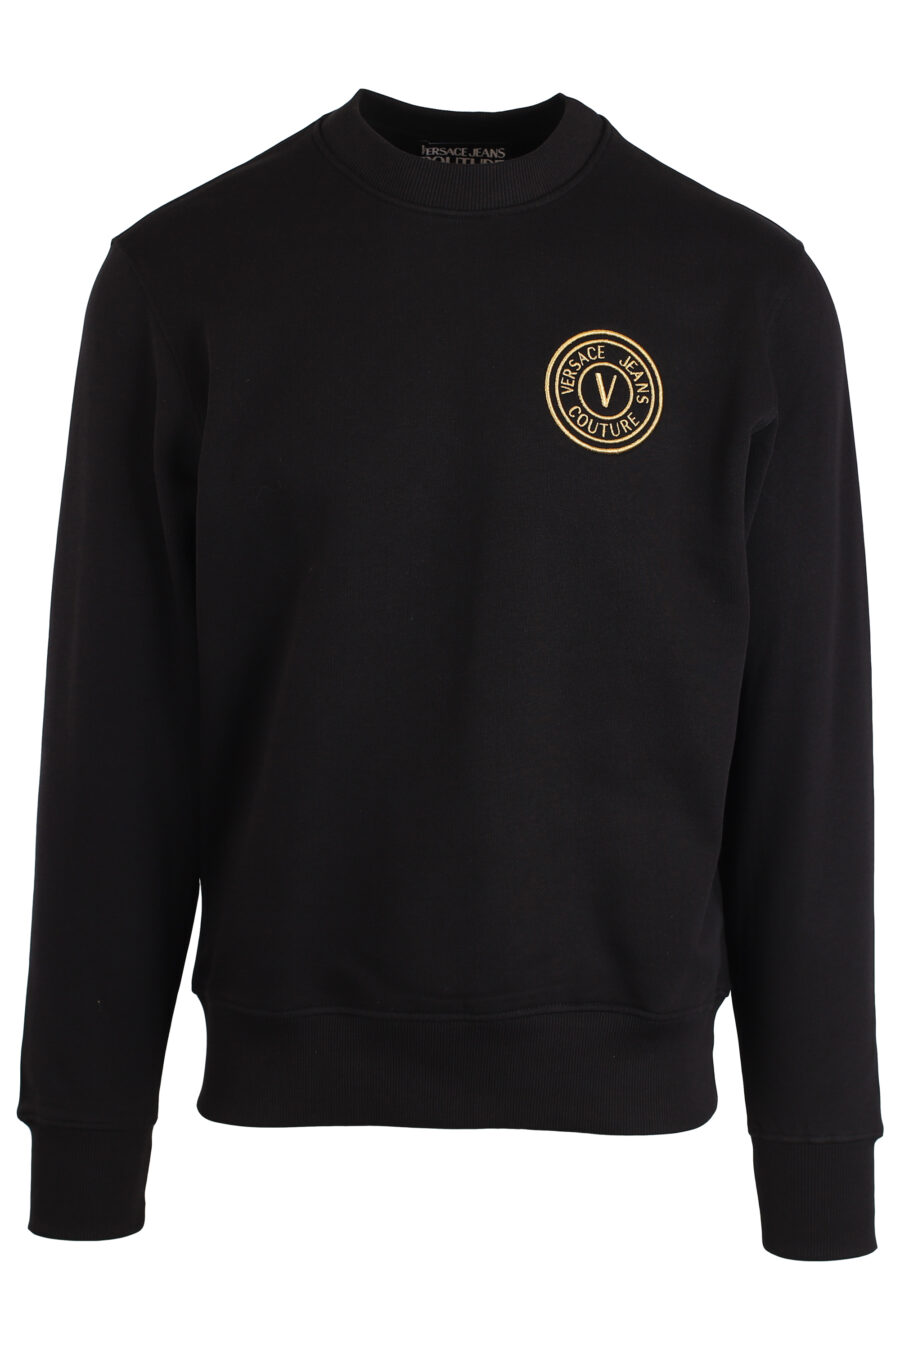 Schwarzes Sweatshirt mit kleinem runden goldenen Logo - IMG 3990